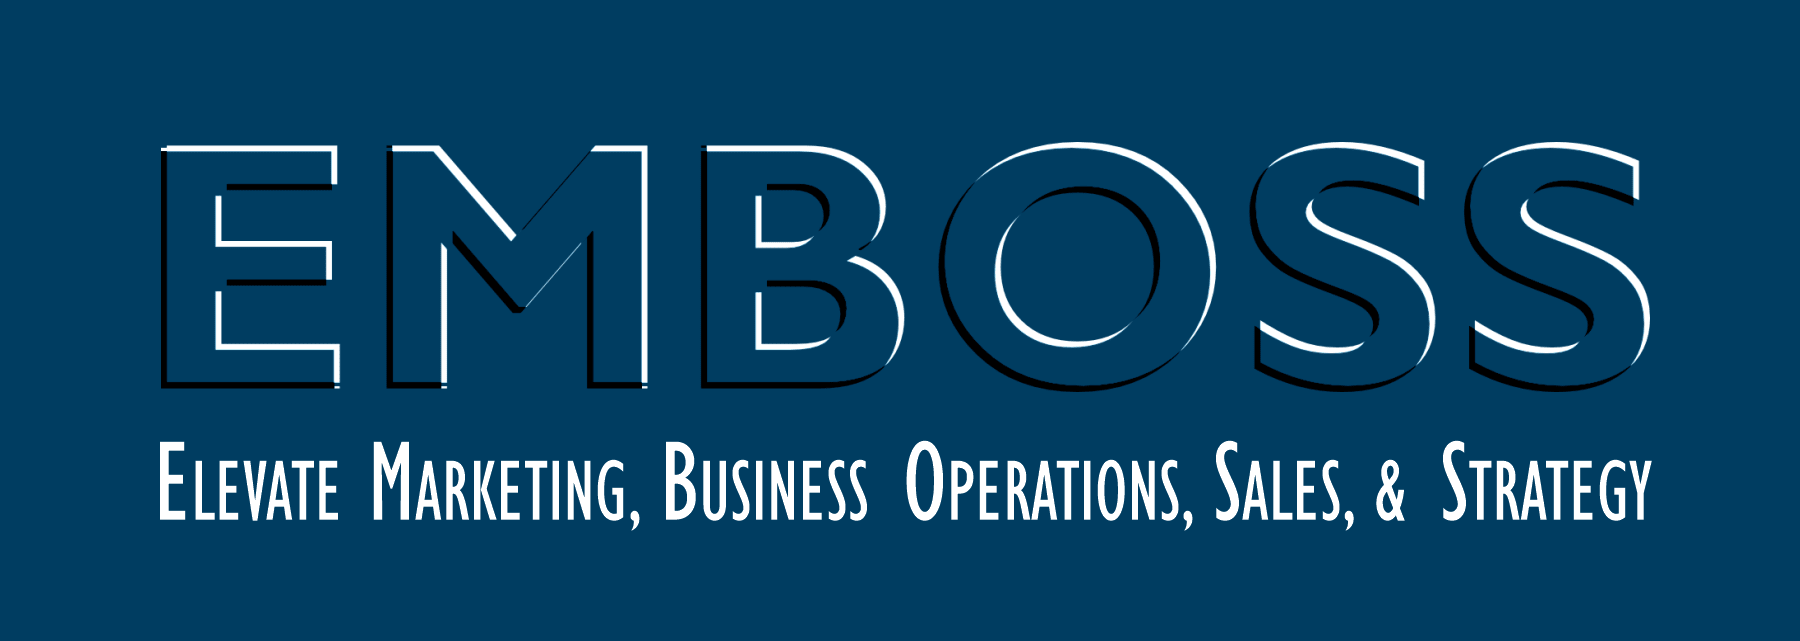 emboss marketing consulting program banner